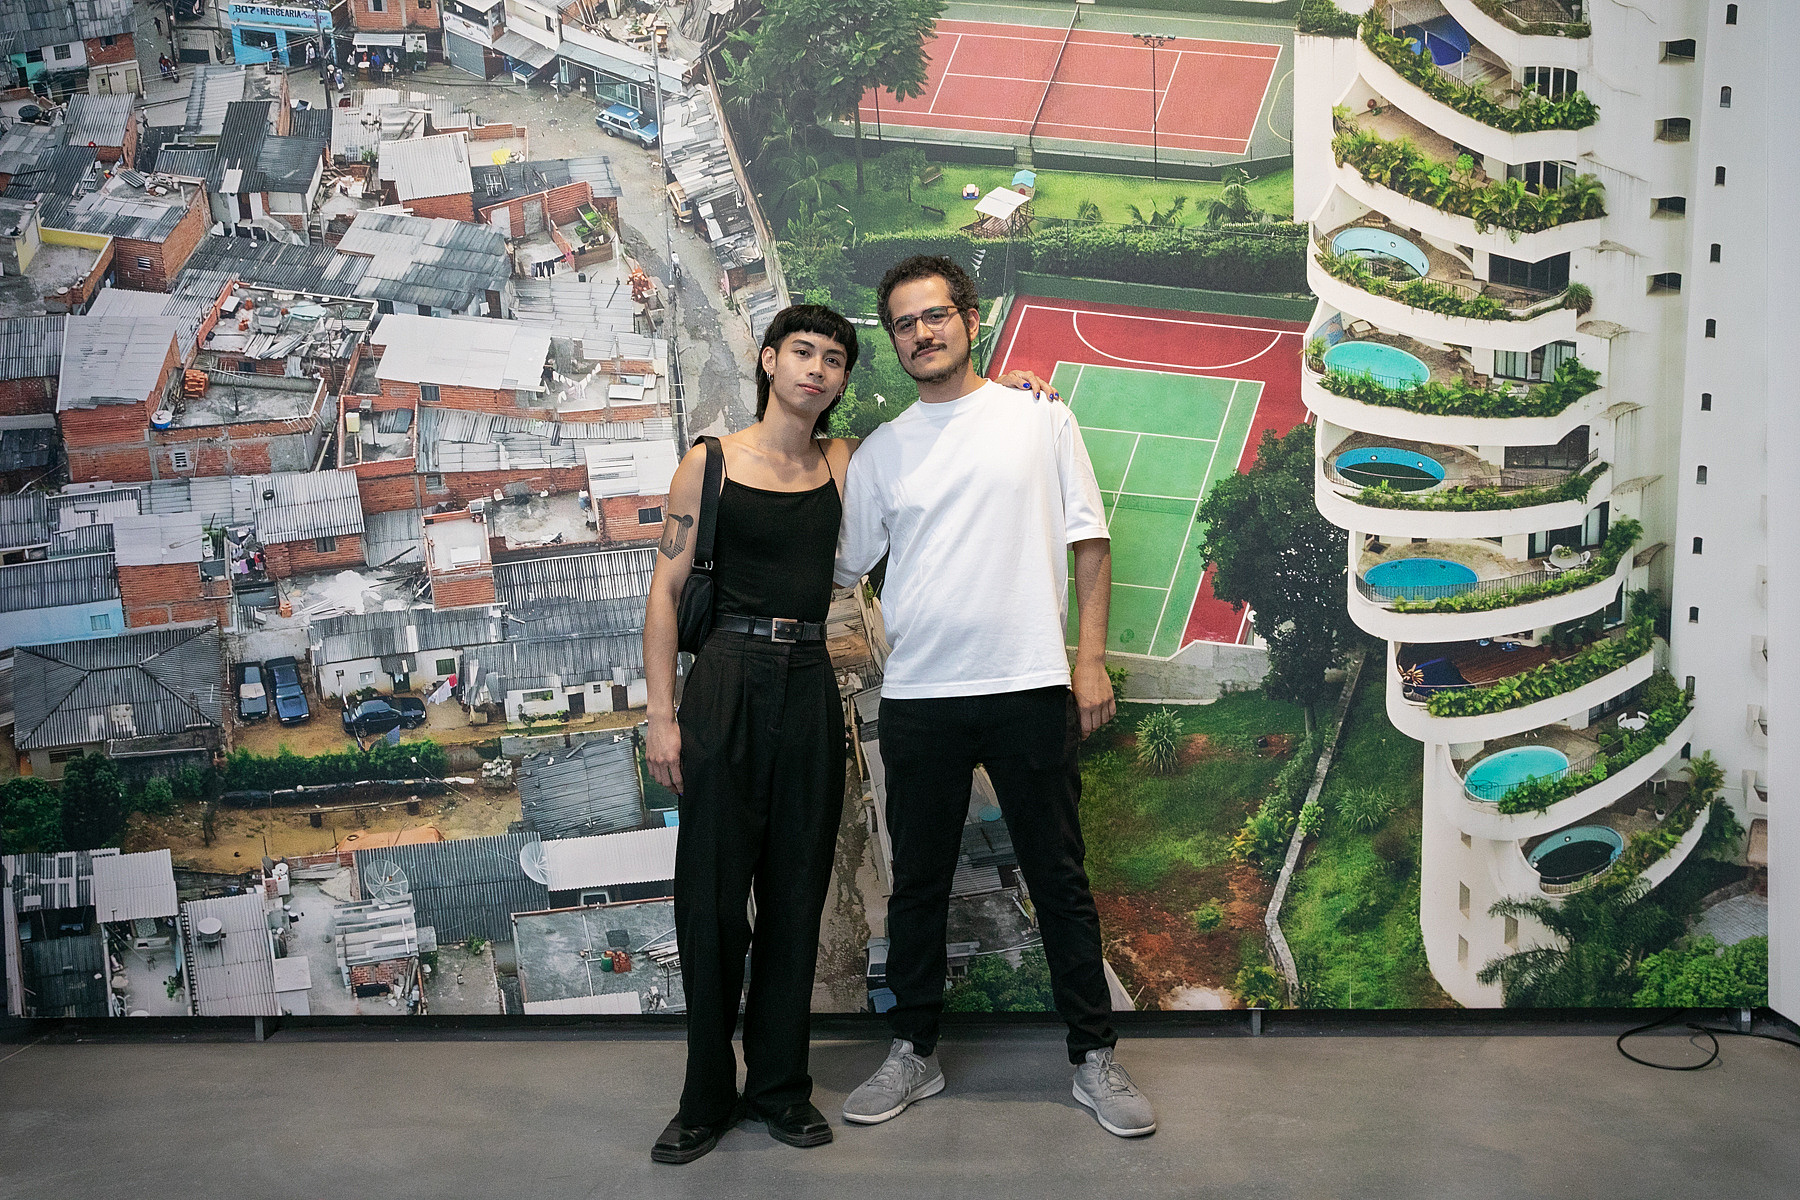 João Pedro Prado und Jacky Lai, die Künstler bei der Ausstellungseröffnung